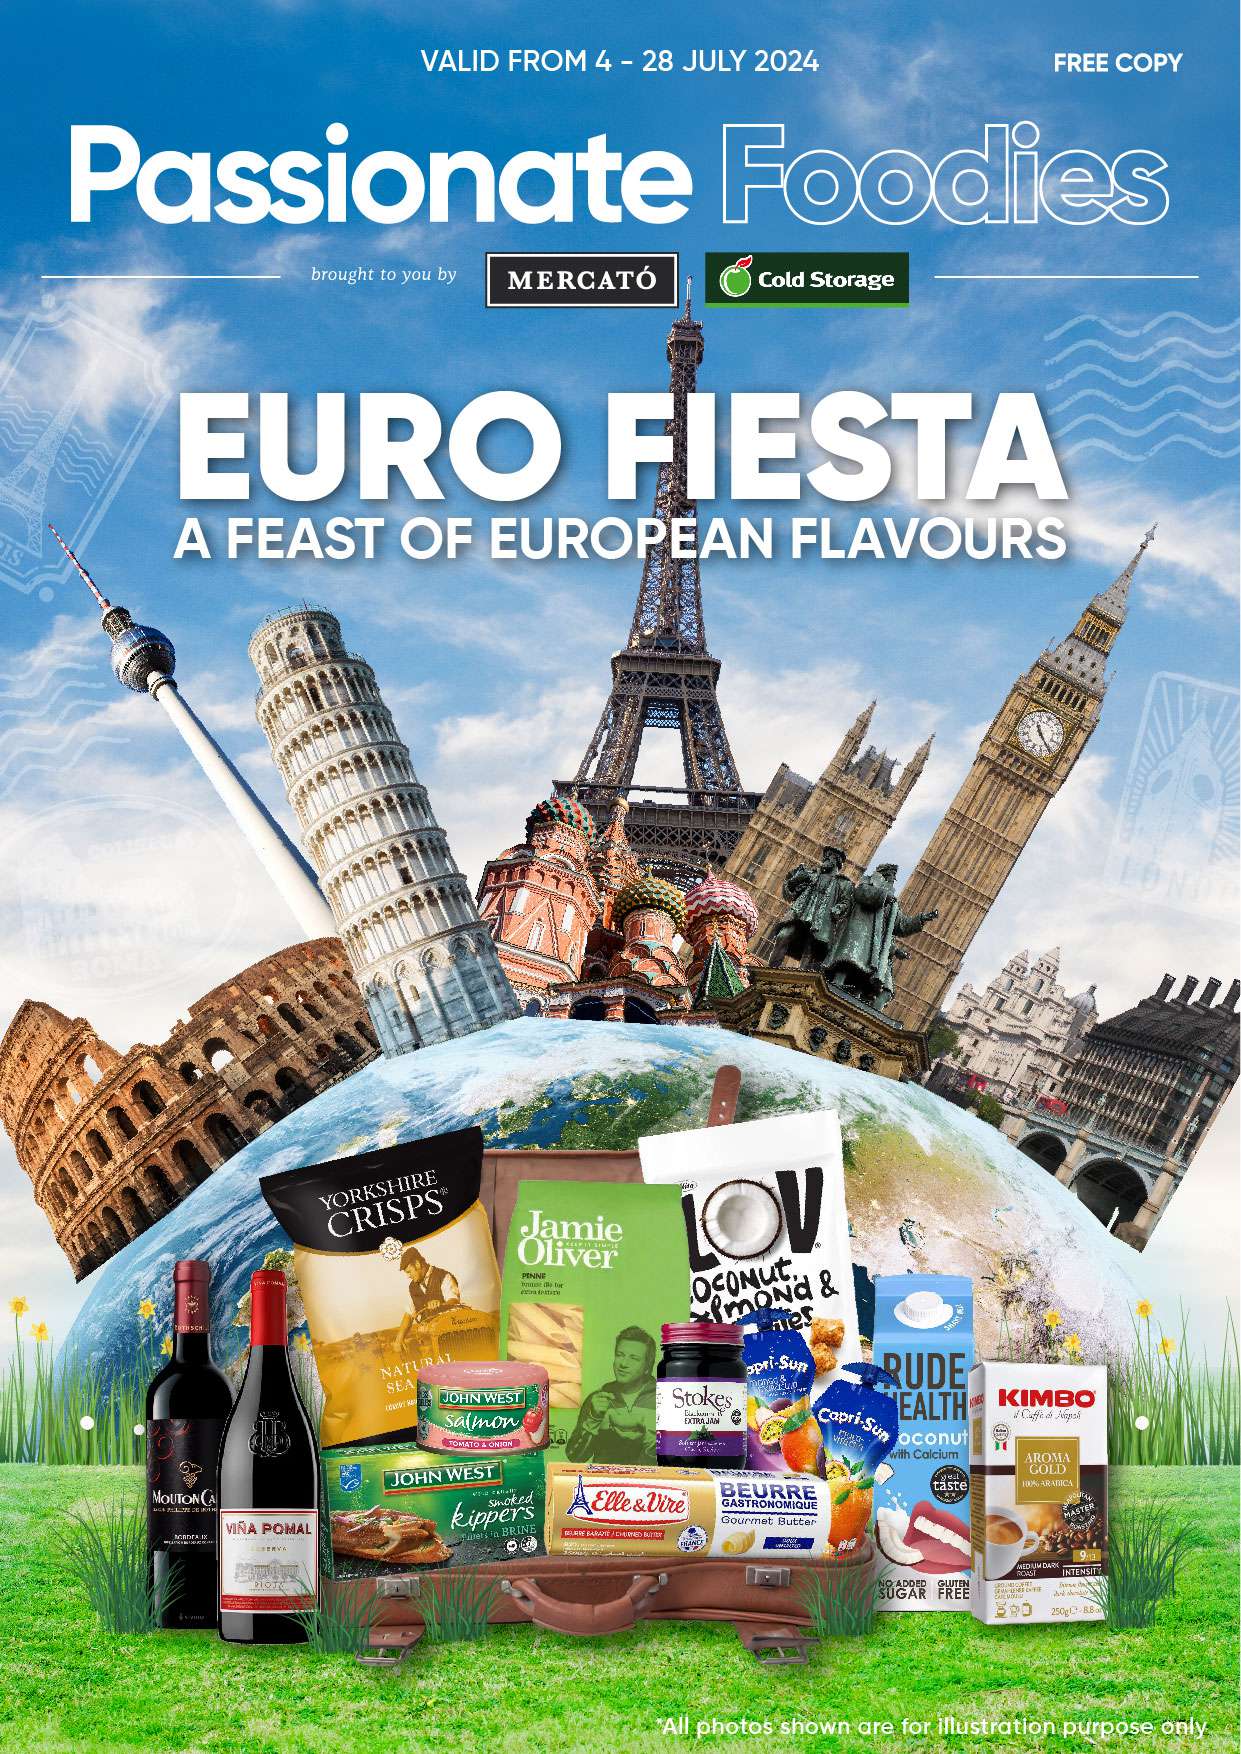 Euro Fiesta (4 - 28 July)